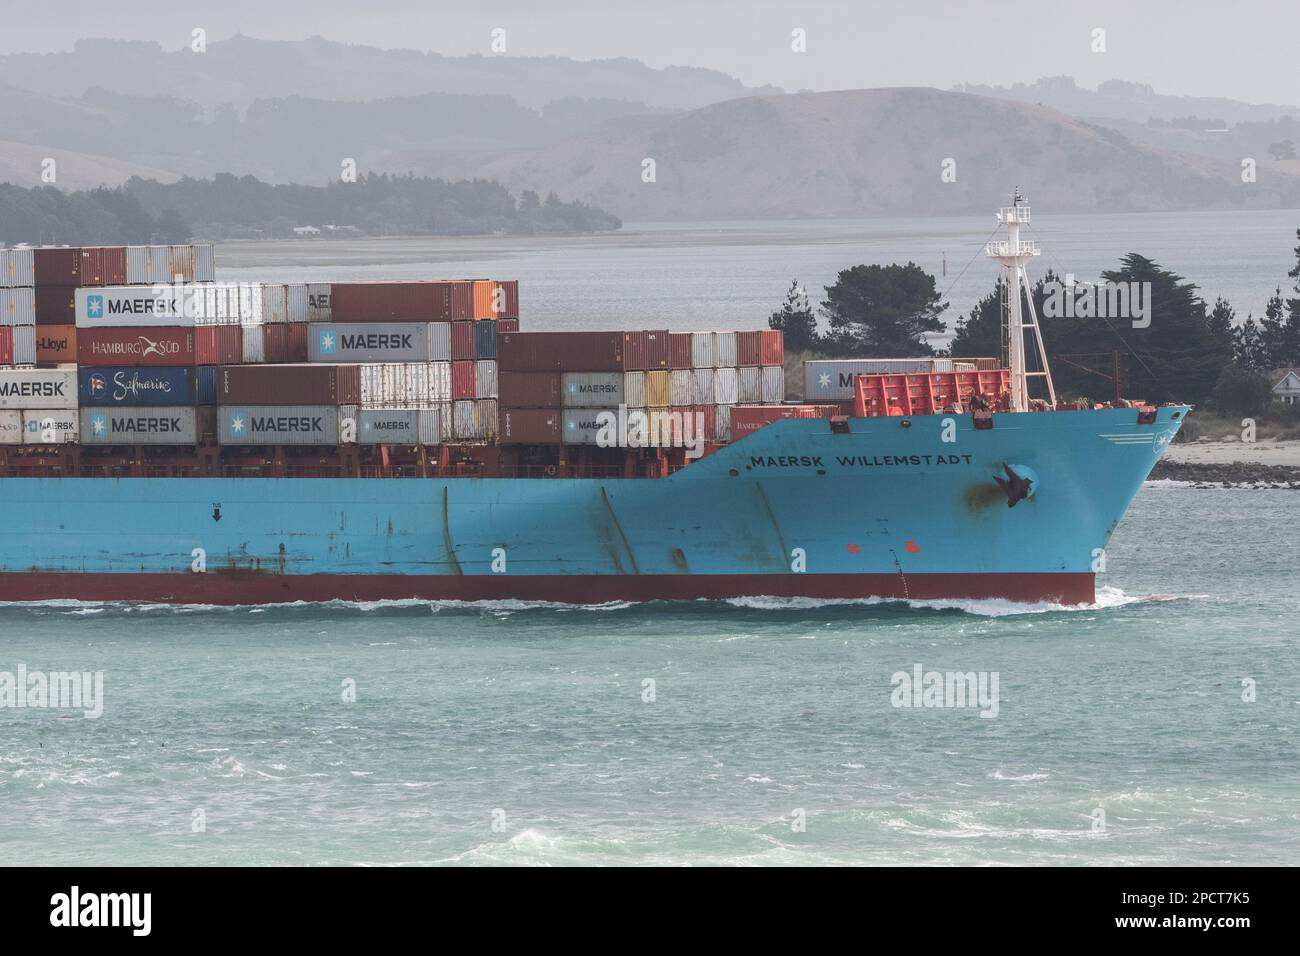 Un cargo chargé traverse une baie de l'île sud d'Aotearoa, en Nouvelle-Zélande. Banque D'Images